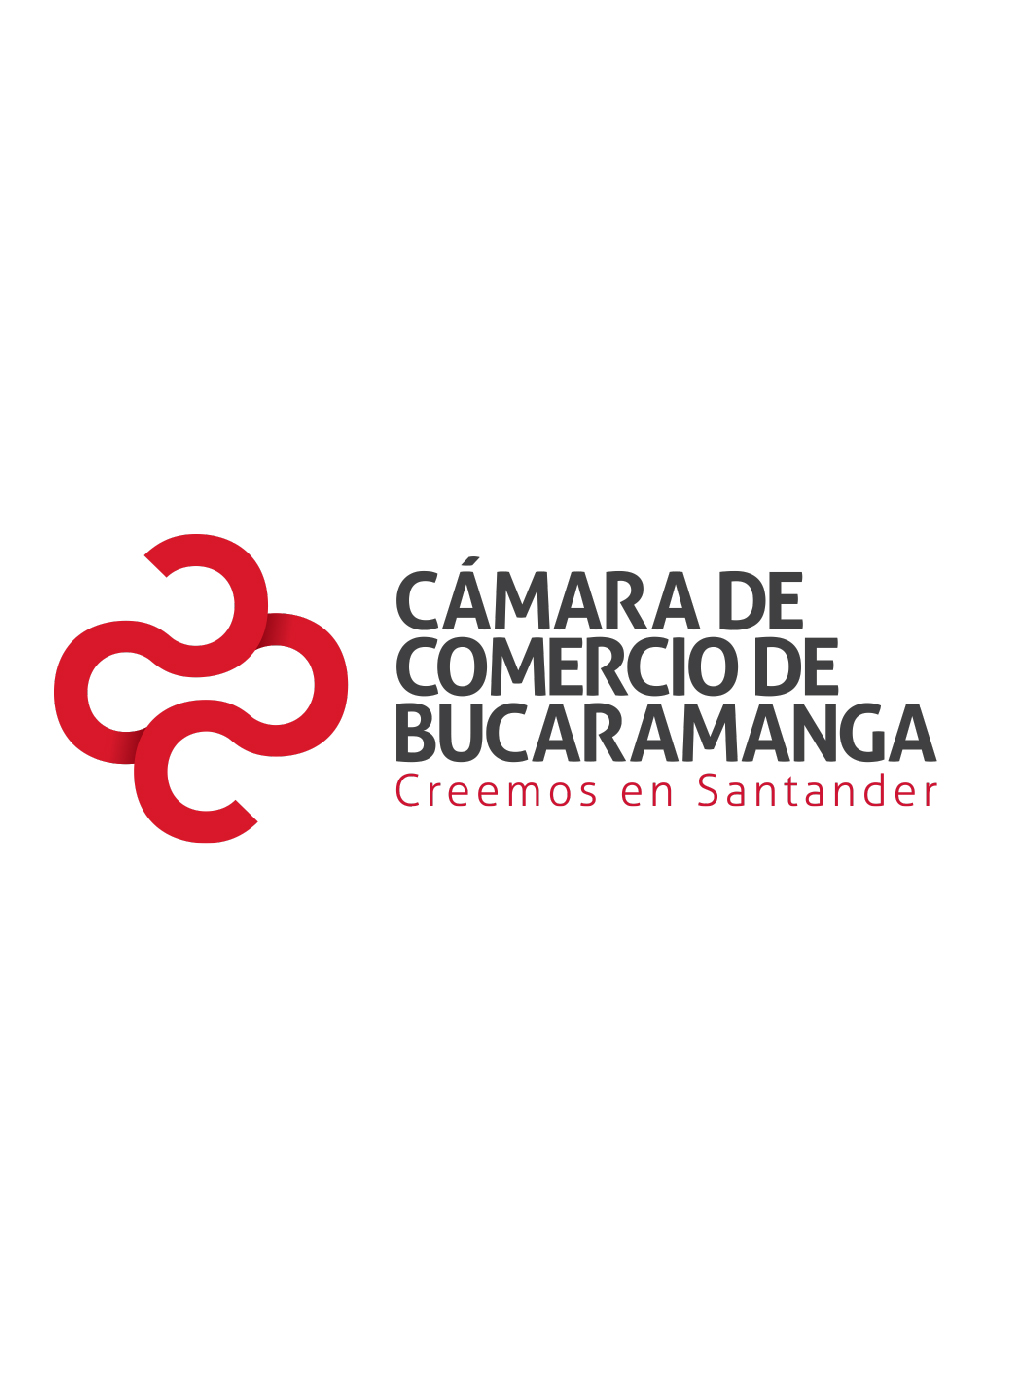 7 Razones para creer en Santander 2018